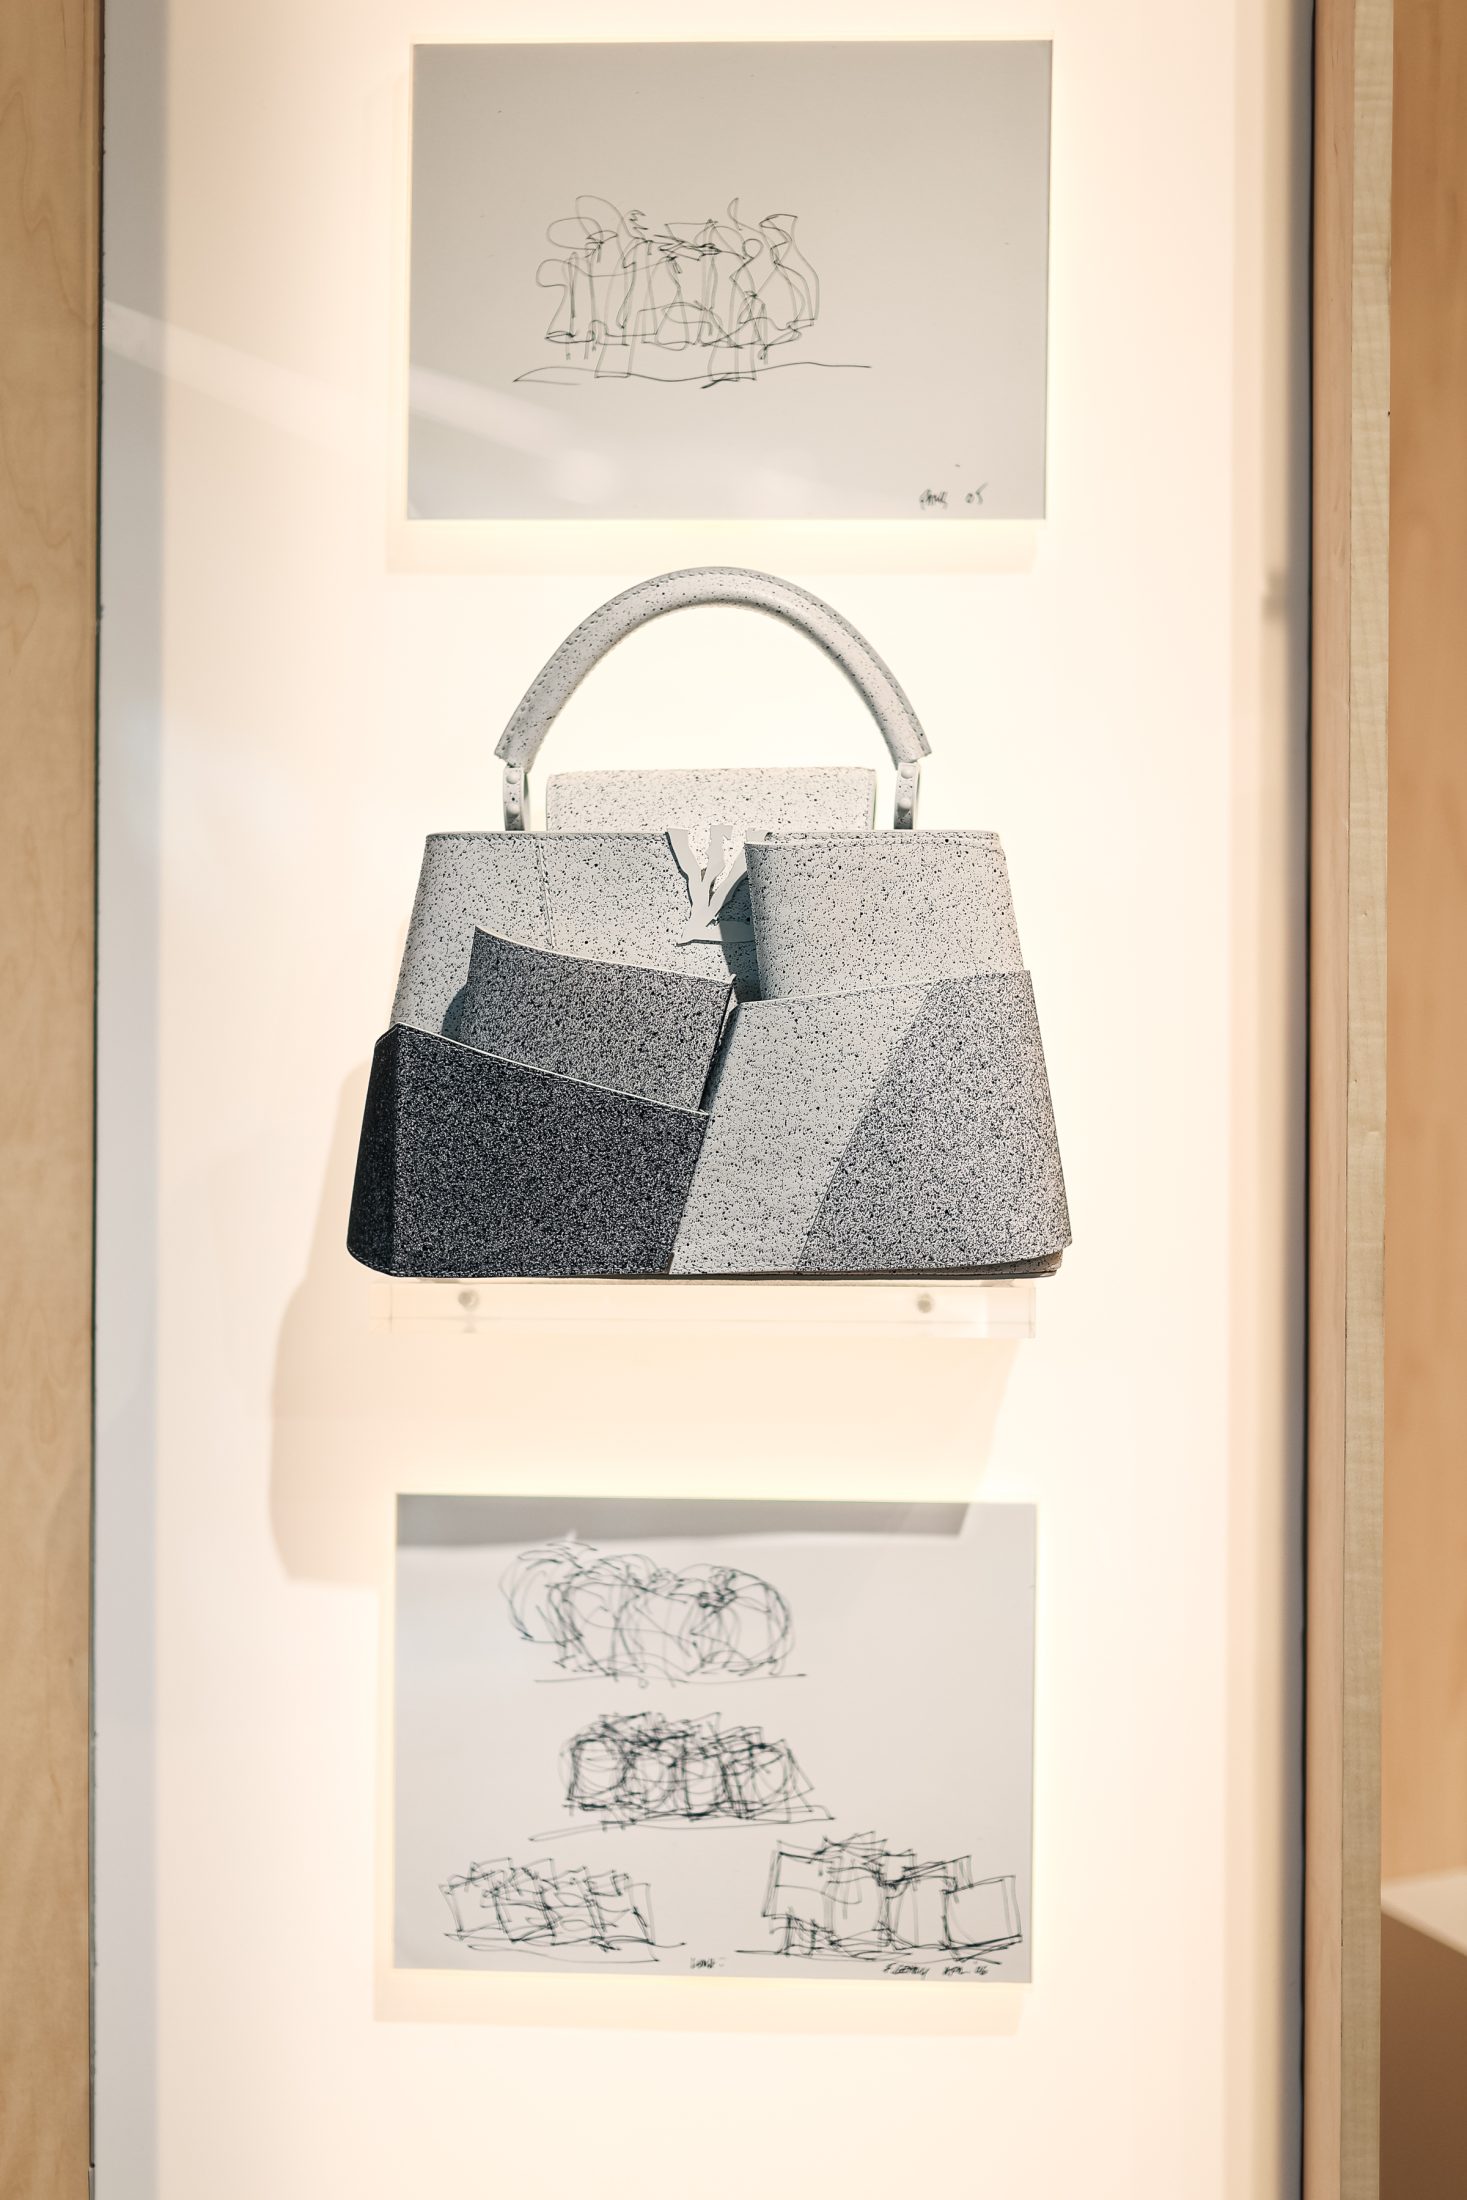 Louis Vuitton и Фрэнк Гери презентуют свои работы на выставке Art Basel Miami Beach